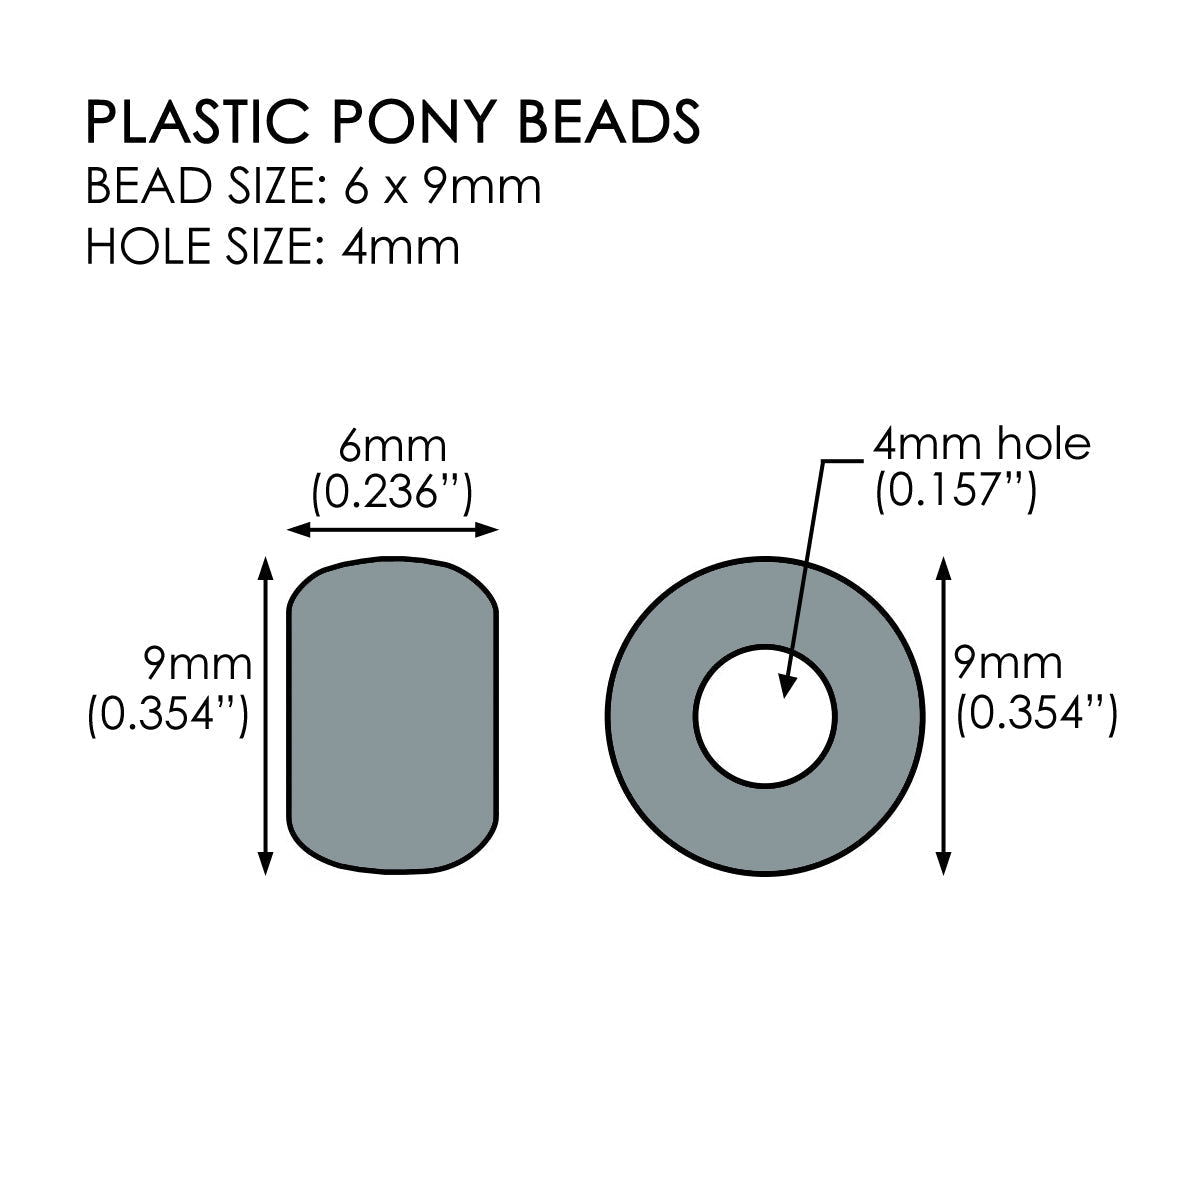 Jet Black w/ Glitter Plastic Craft Pony Beads 6x9mm Bulk, Made in USA -  Pony Beads Plus